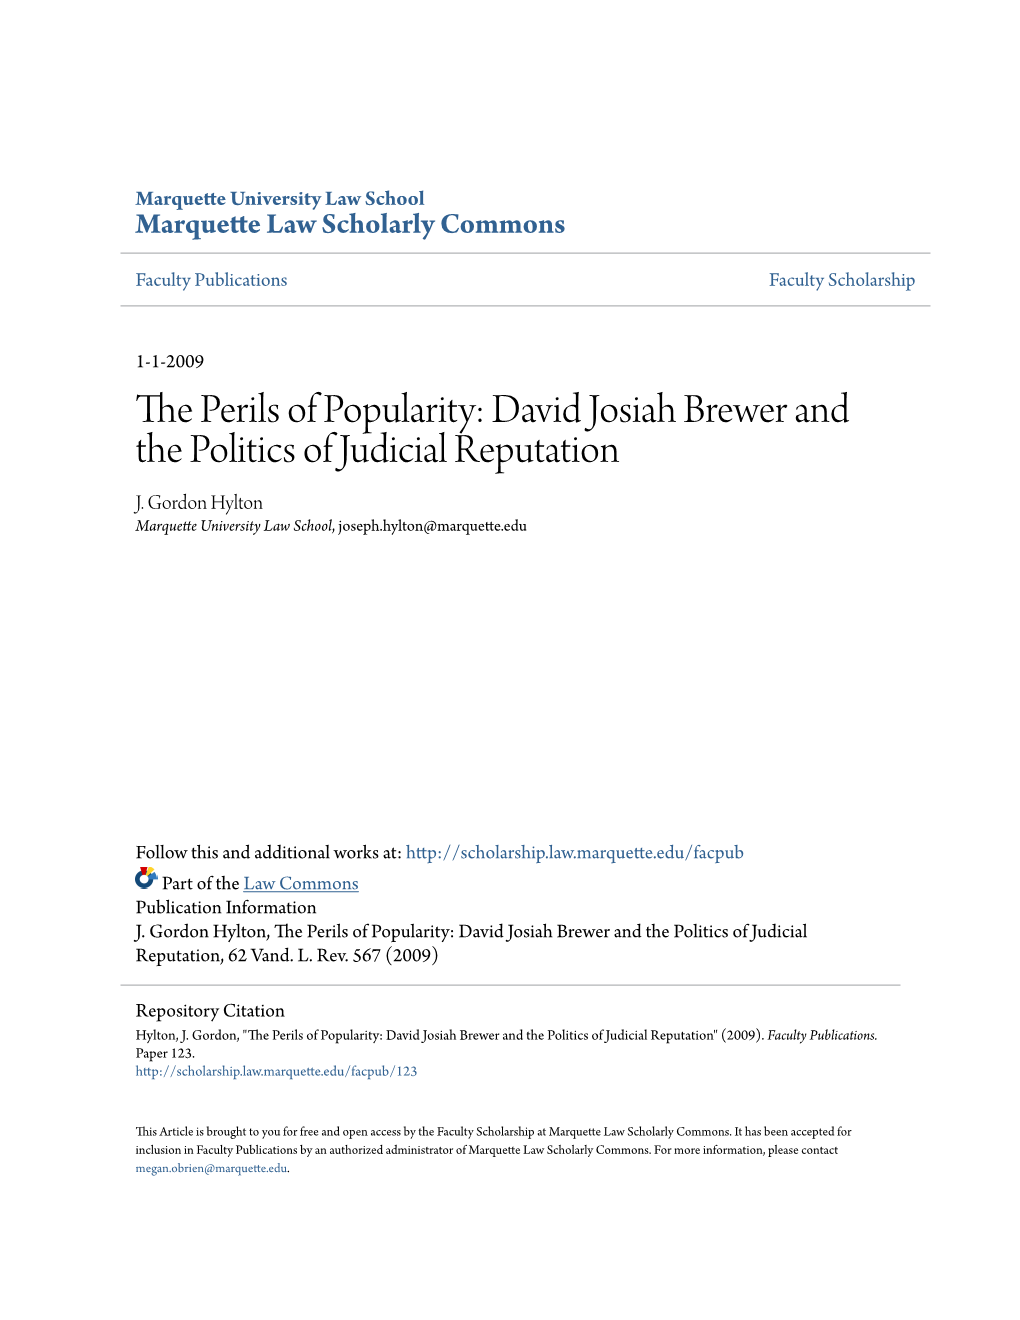 David Josiah Brewer and the Politics of Judicial Reputation J